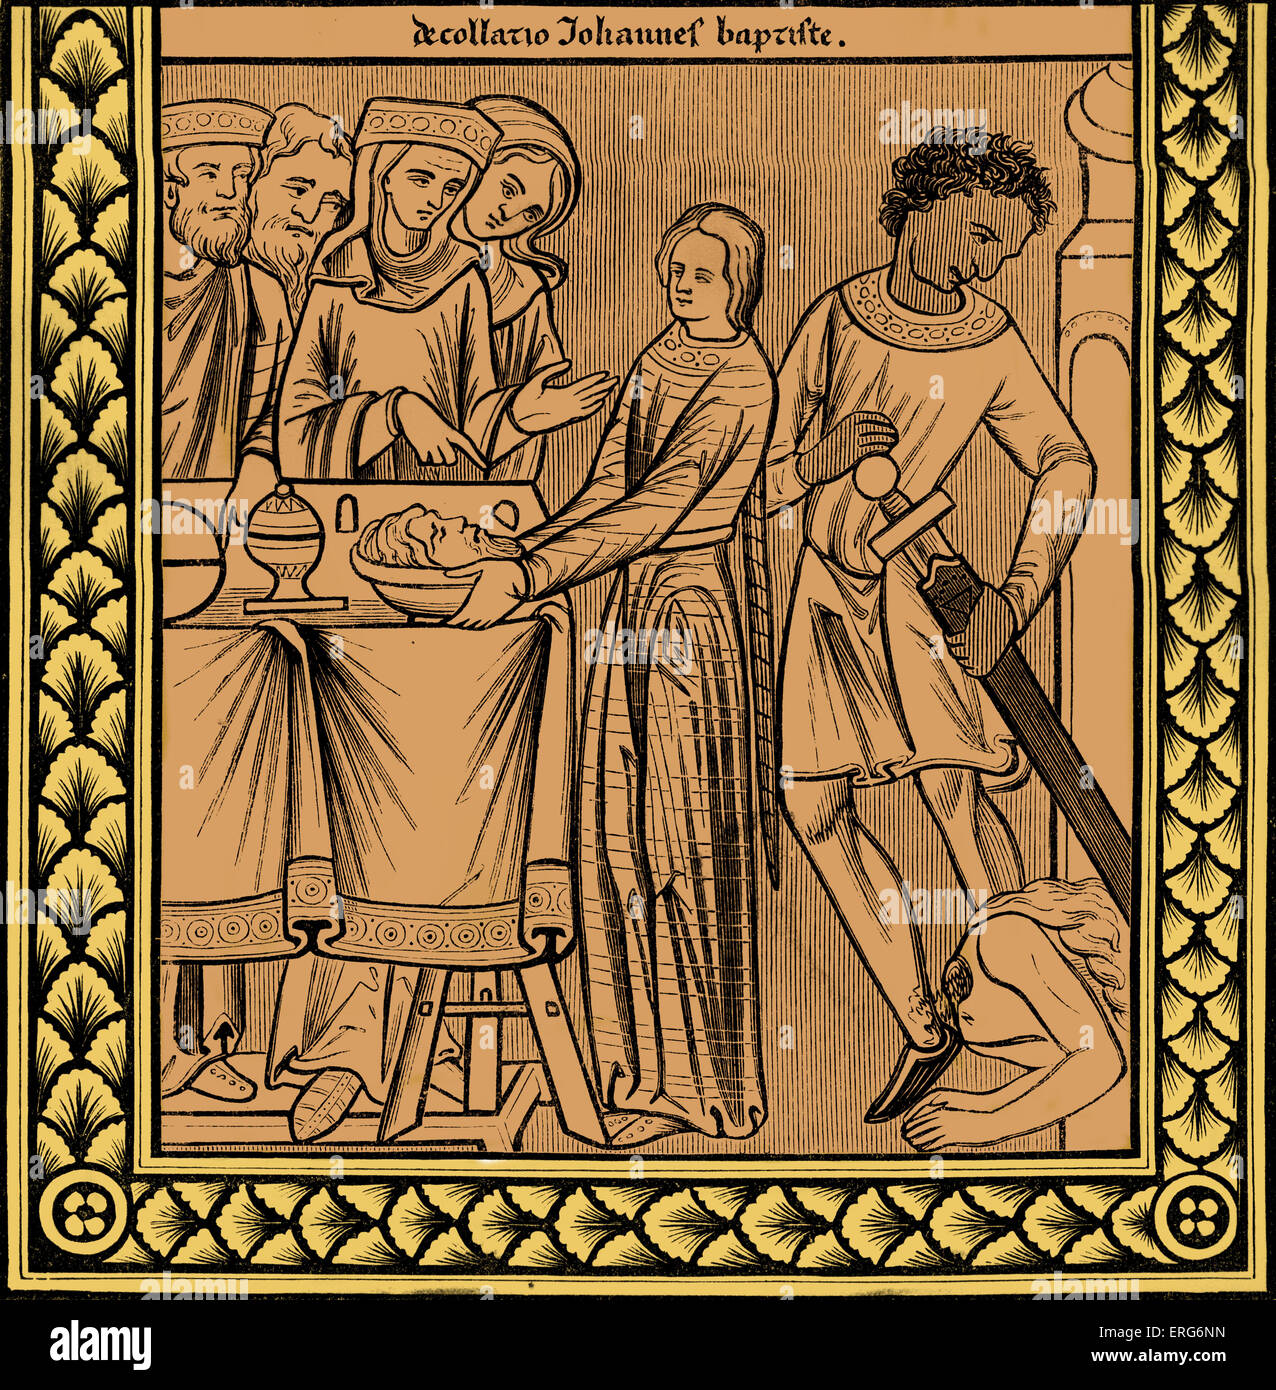 La décapitation de Jean le Baptiste, reproduit à partir du xiiie siècle dans le livre des Psaumes miniature de St Louis. Jean le Banque D'Images